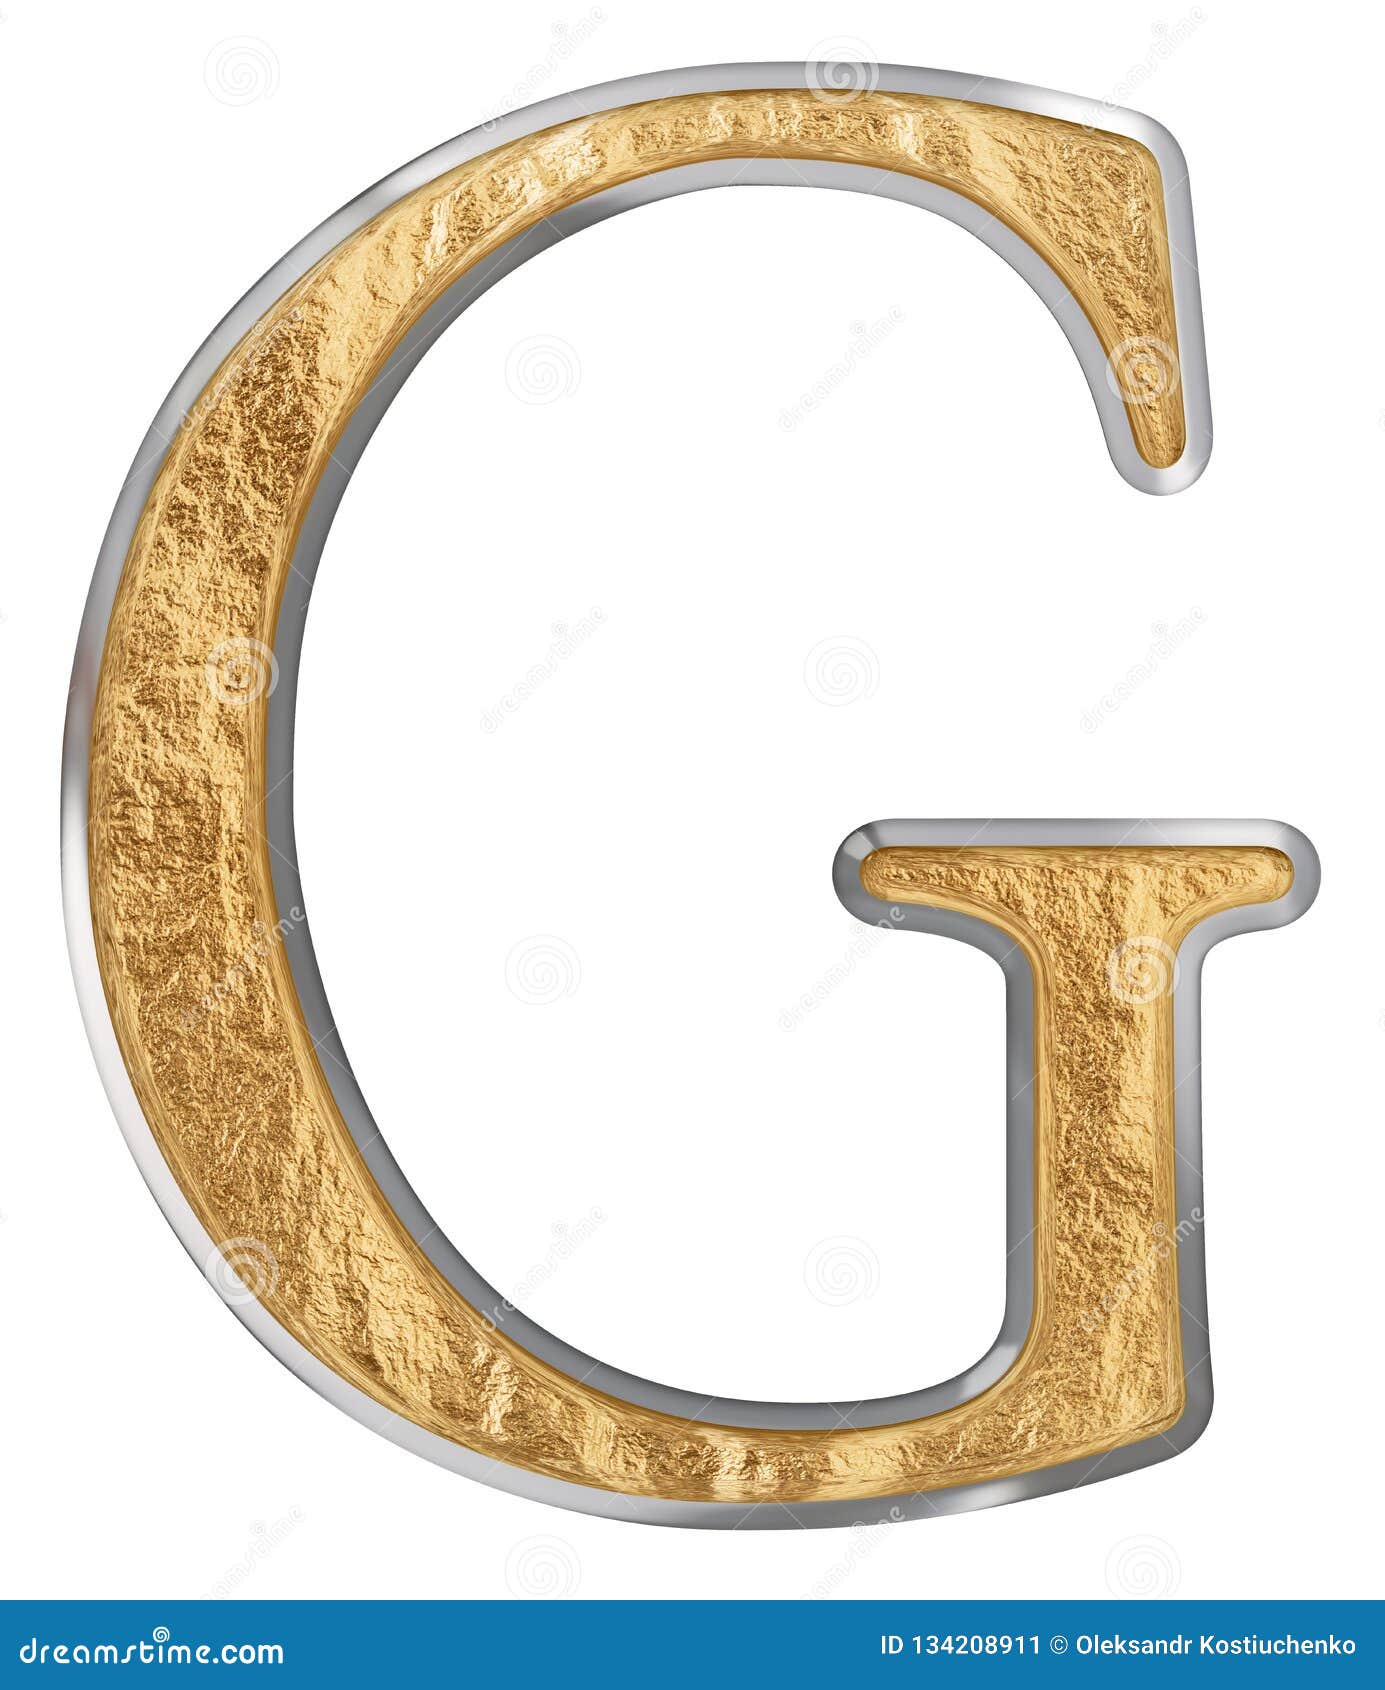 Uppercase Letter G, Isolated on White, 3D Render Stock Illustration ...